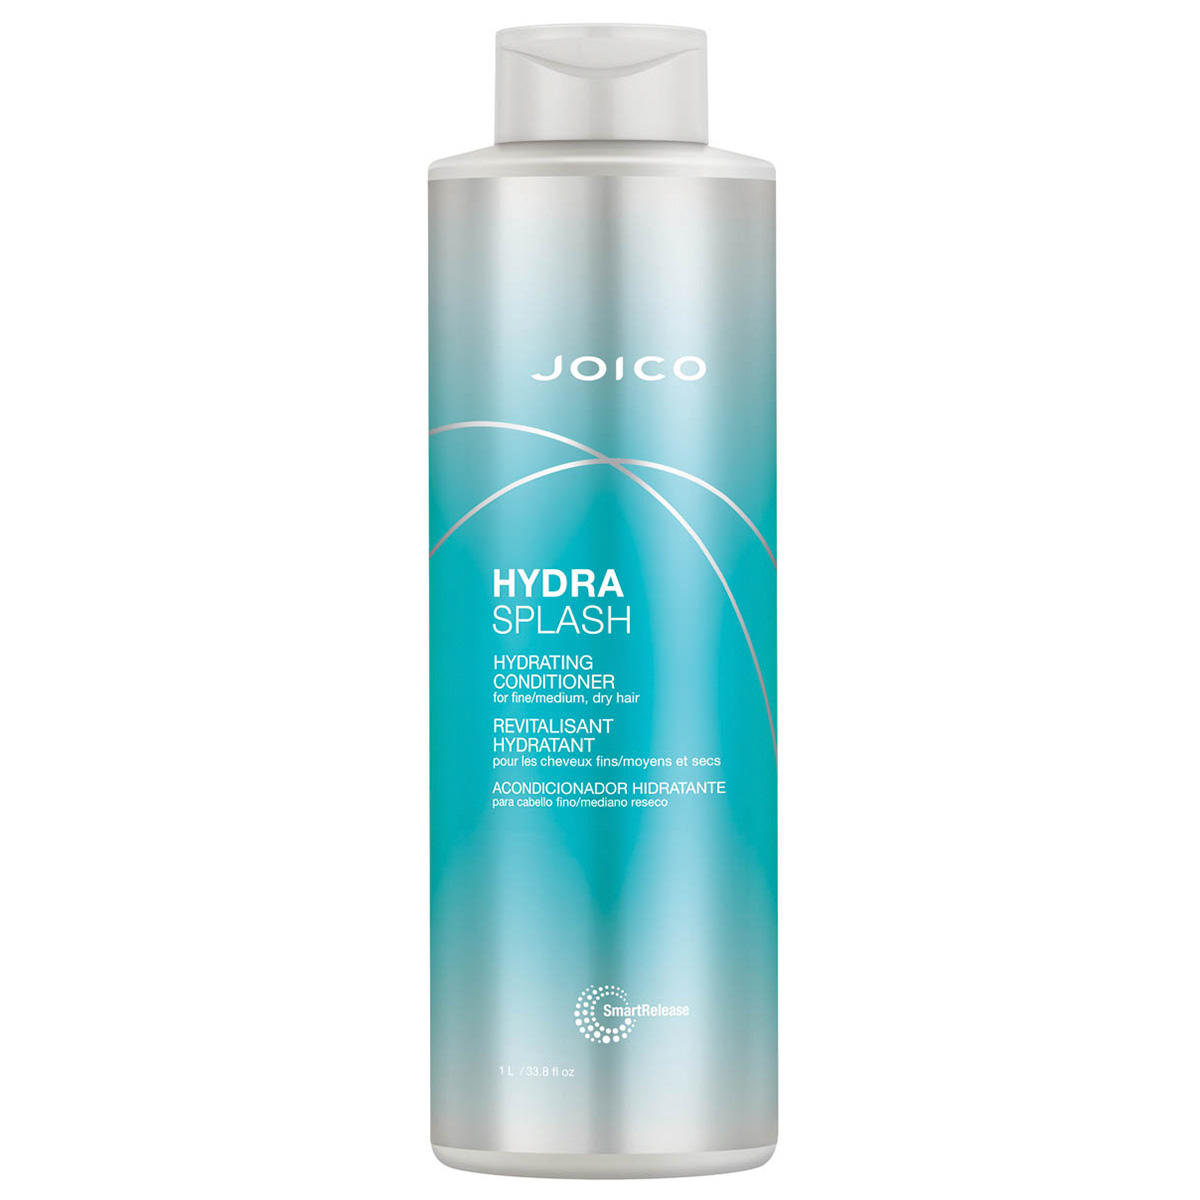 JOICO HYDRA SPLASH Hydrating Conditioner 1 Liter - 1